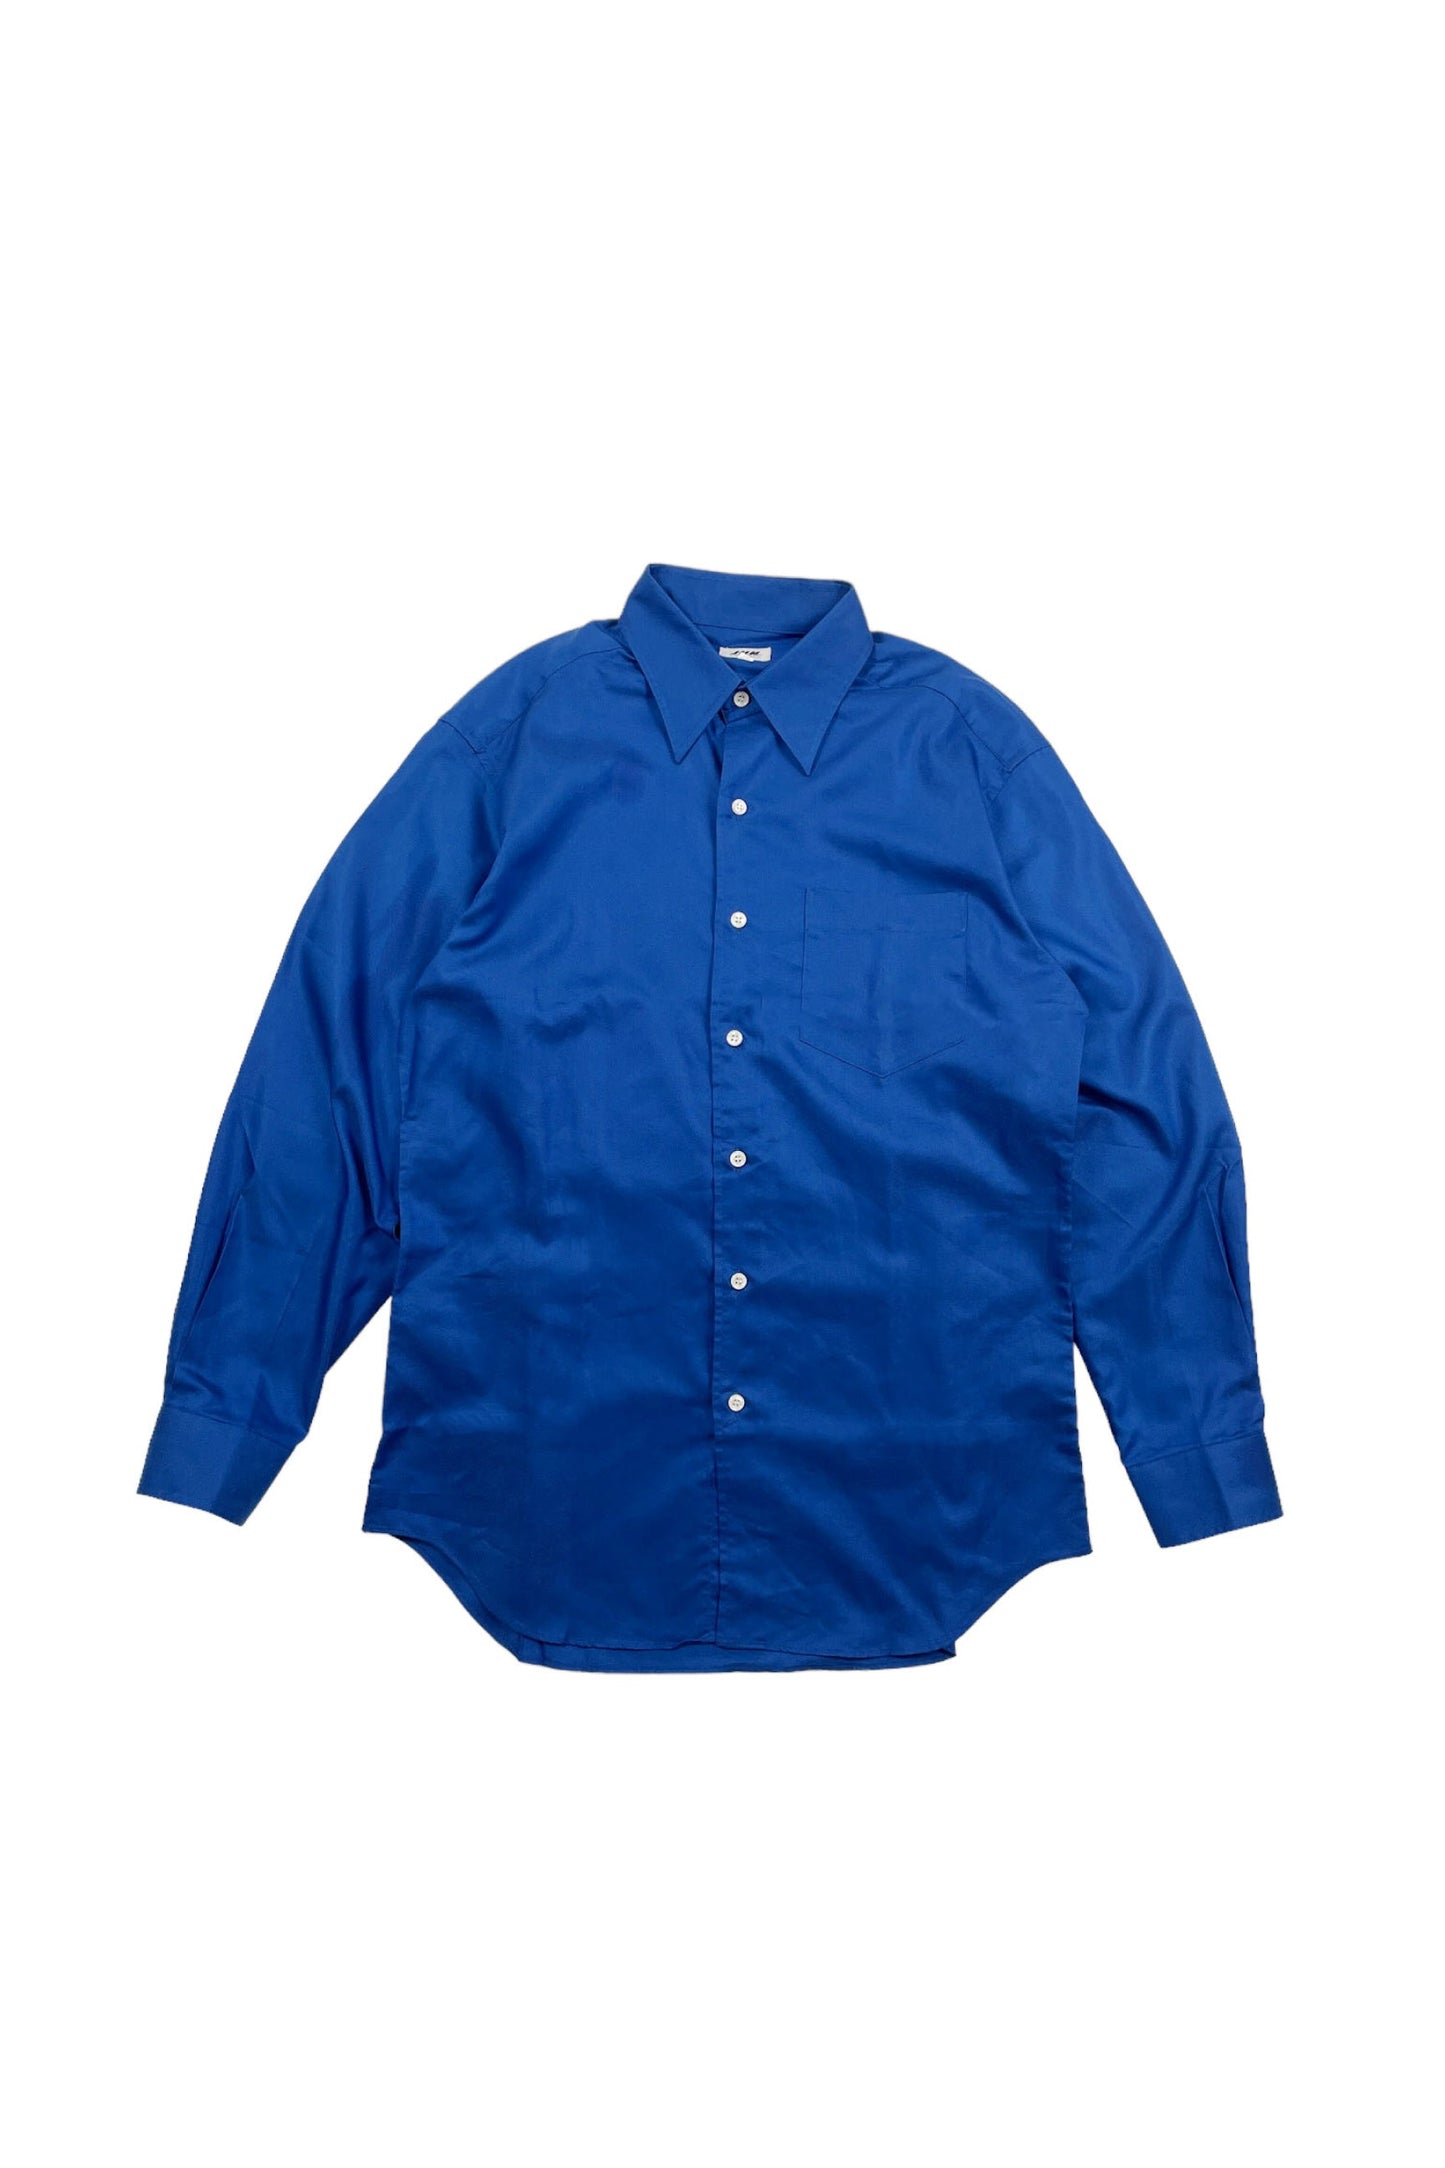 90's JUN shirt blue